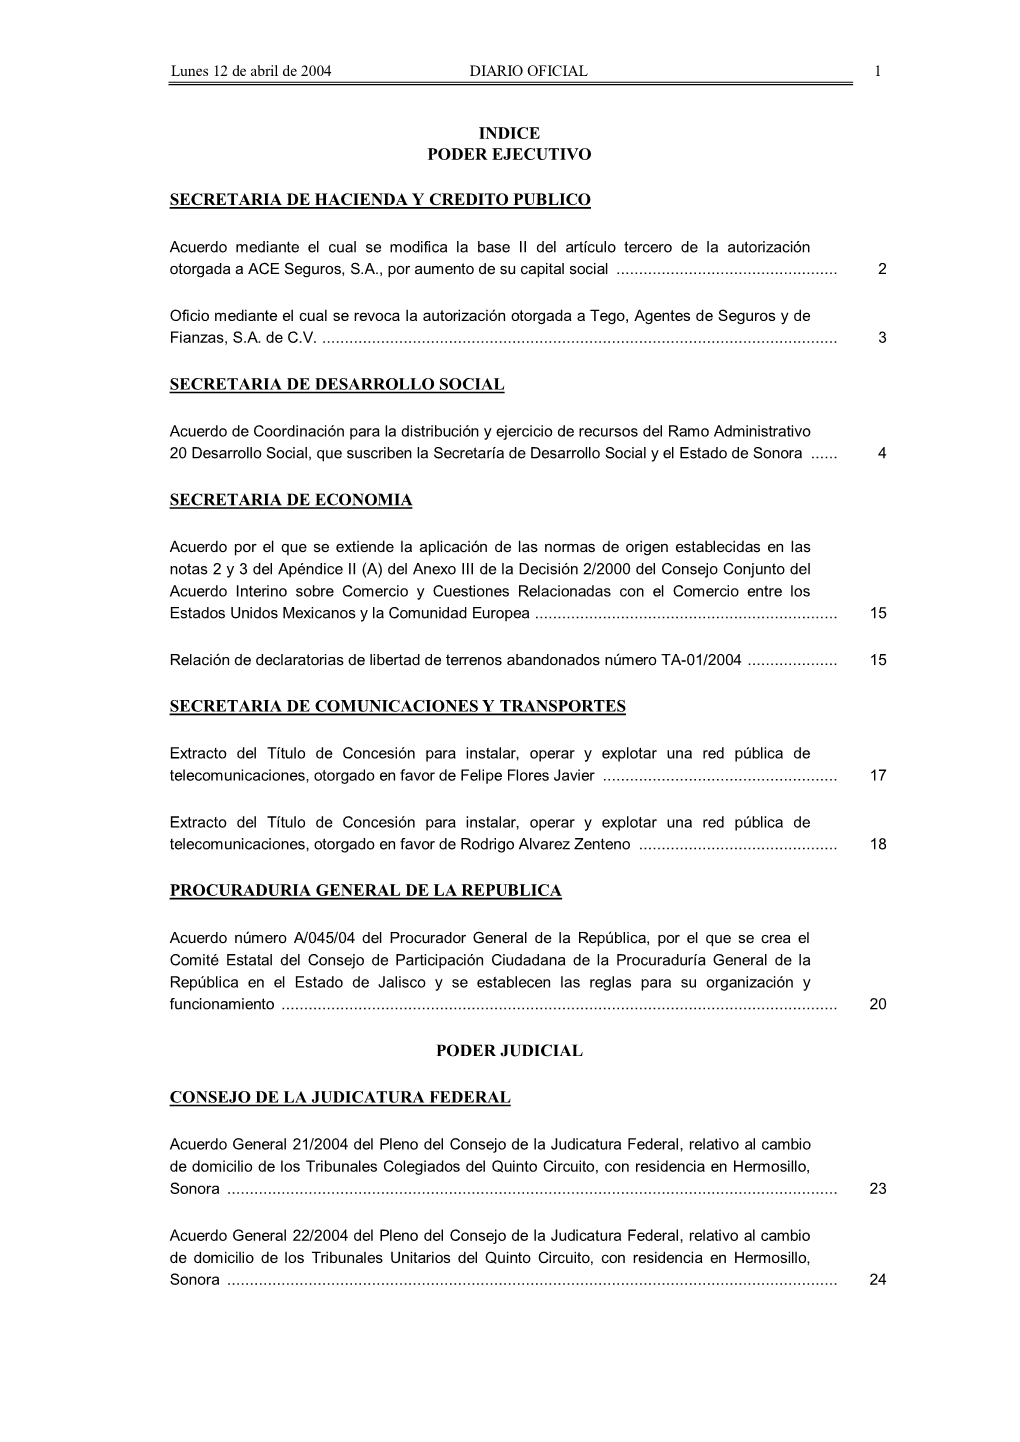 Indice Poder Ejecutivo Secretaria De Hacienda Y Credito Publico